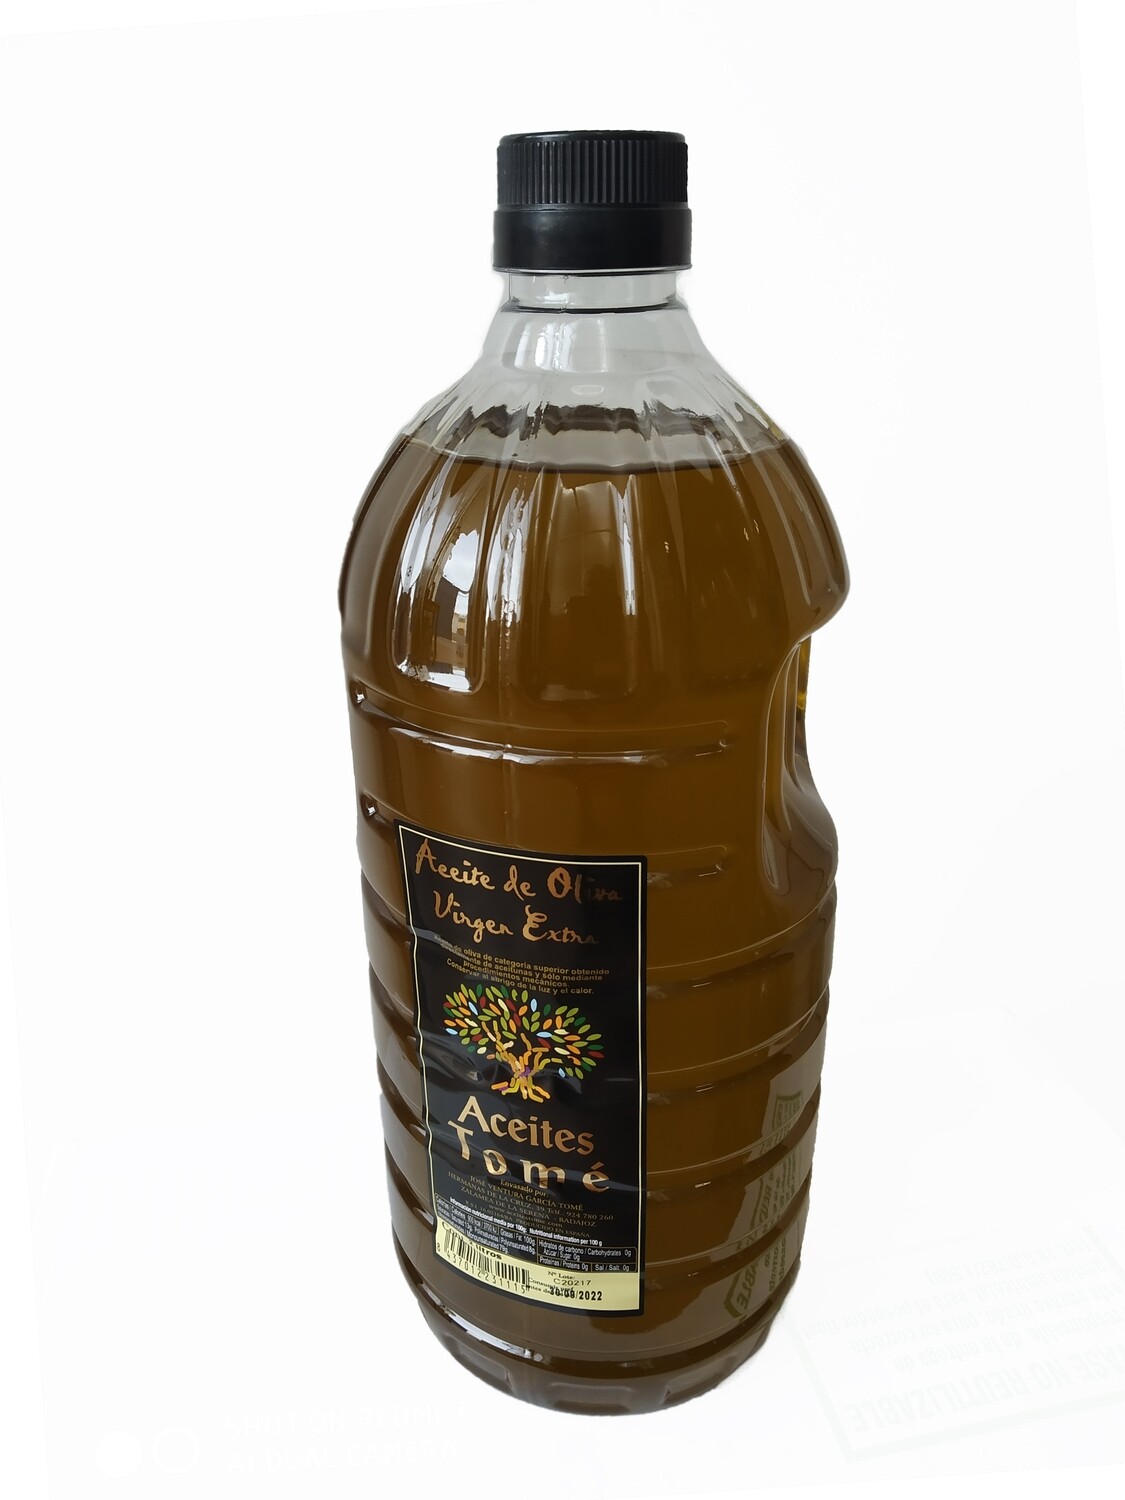 Caja de 6 garrafas de 2 litros de aceite de oliva virgen extra VERDE EN RAMA.